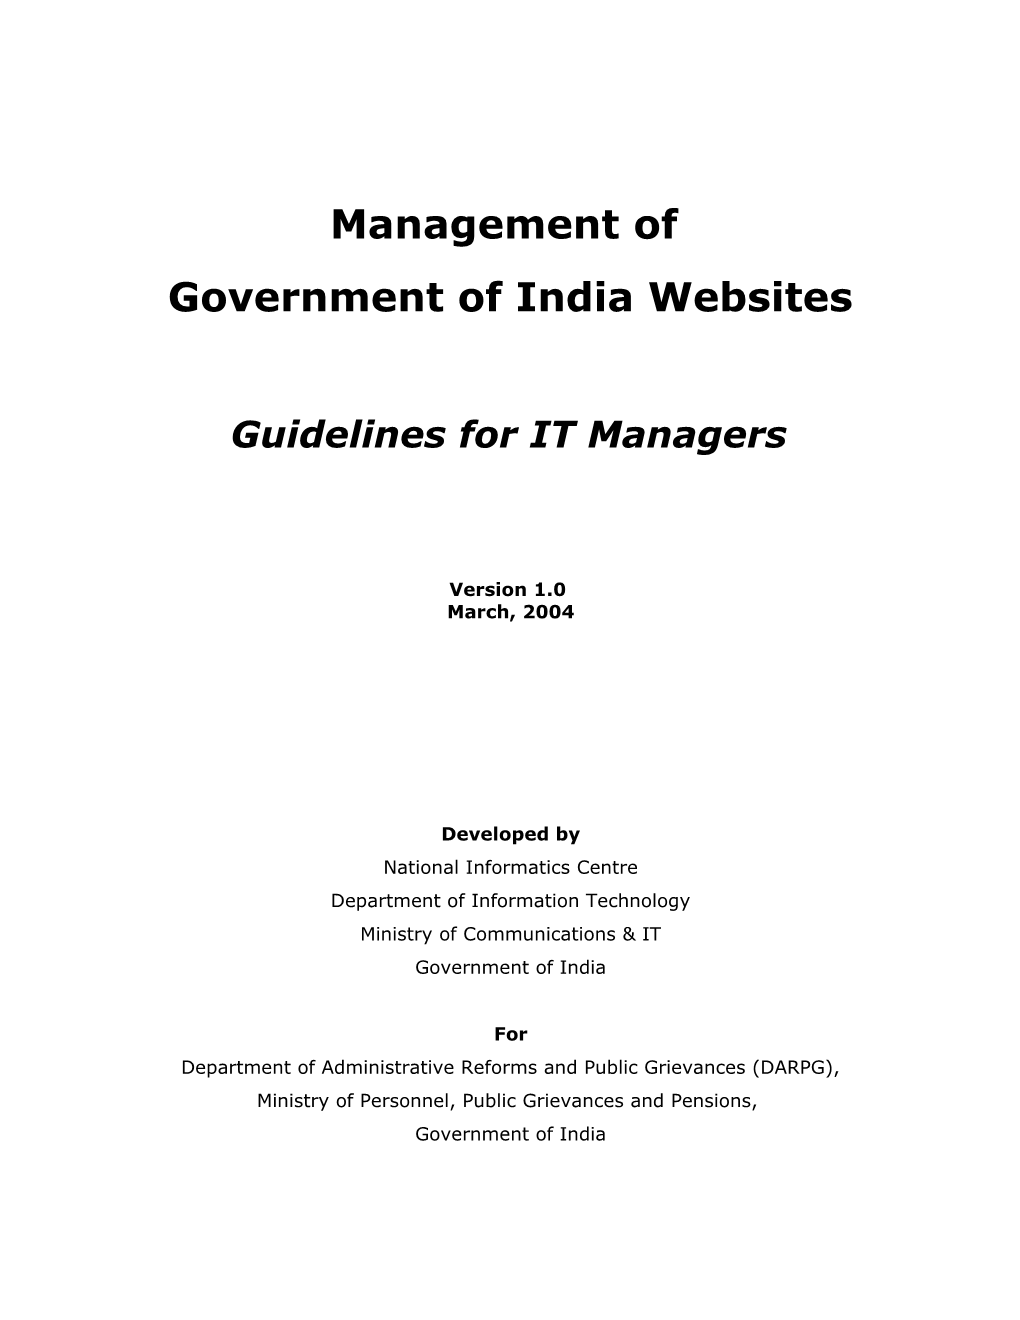 Website Management Guidelines